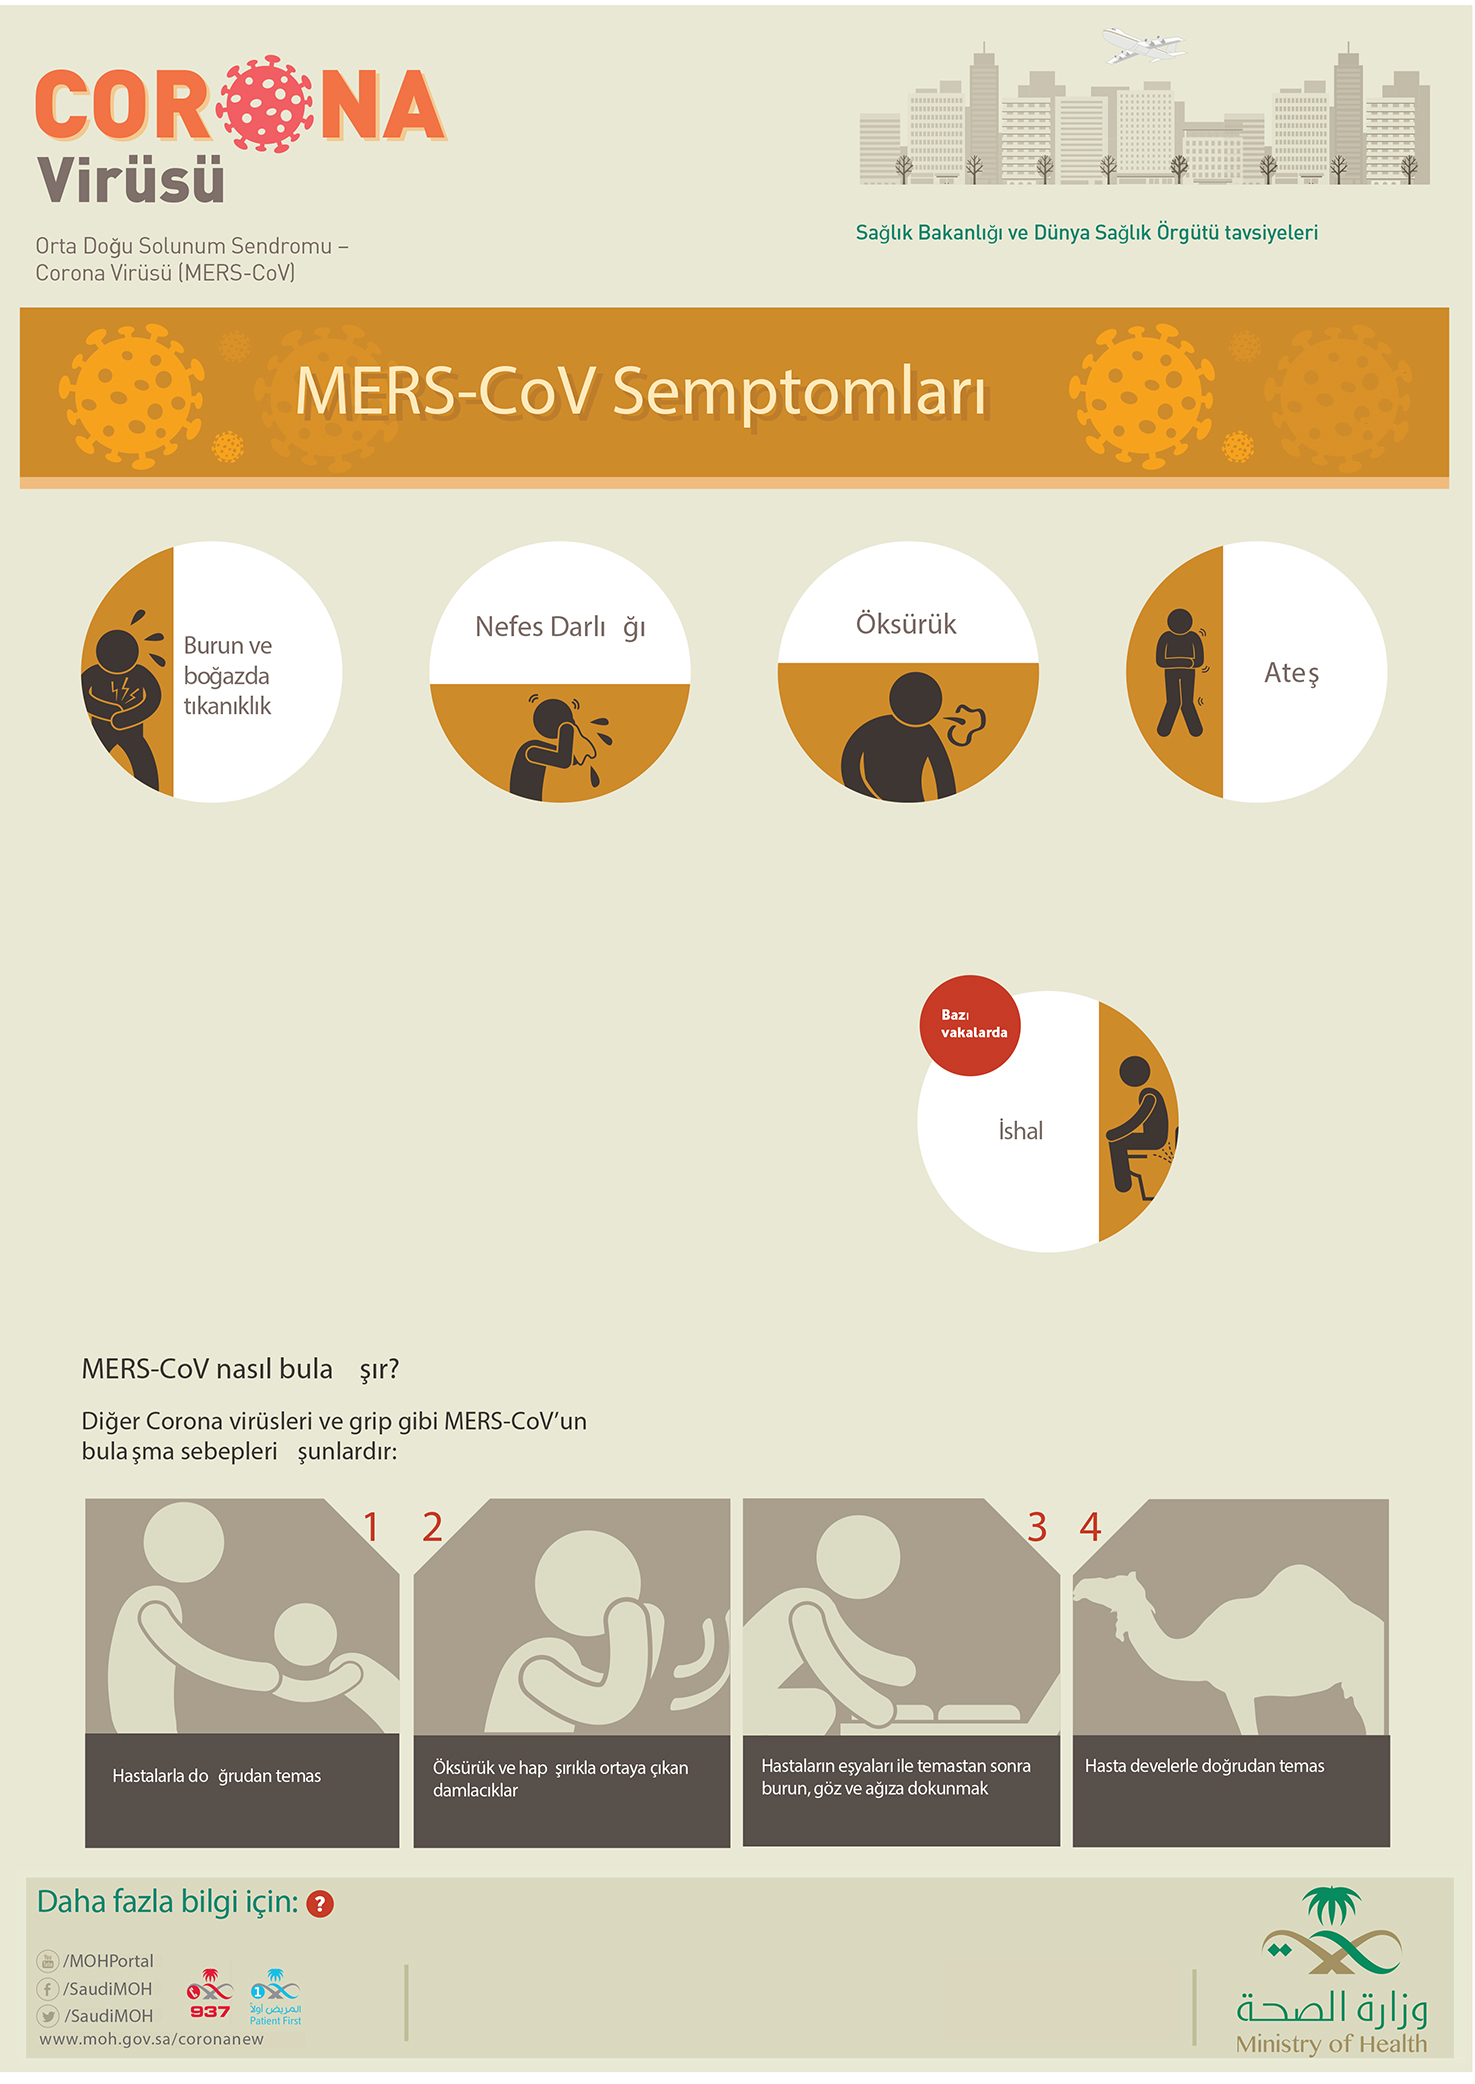 Coronavirus (MERS-CoV) - Corona virus (MERS-COV) Infographics1475 x 2084